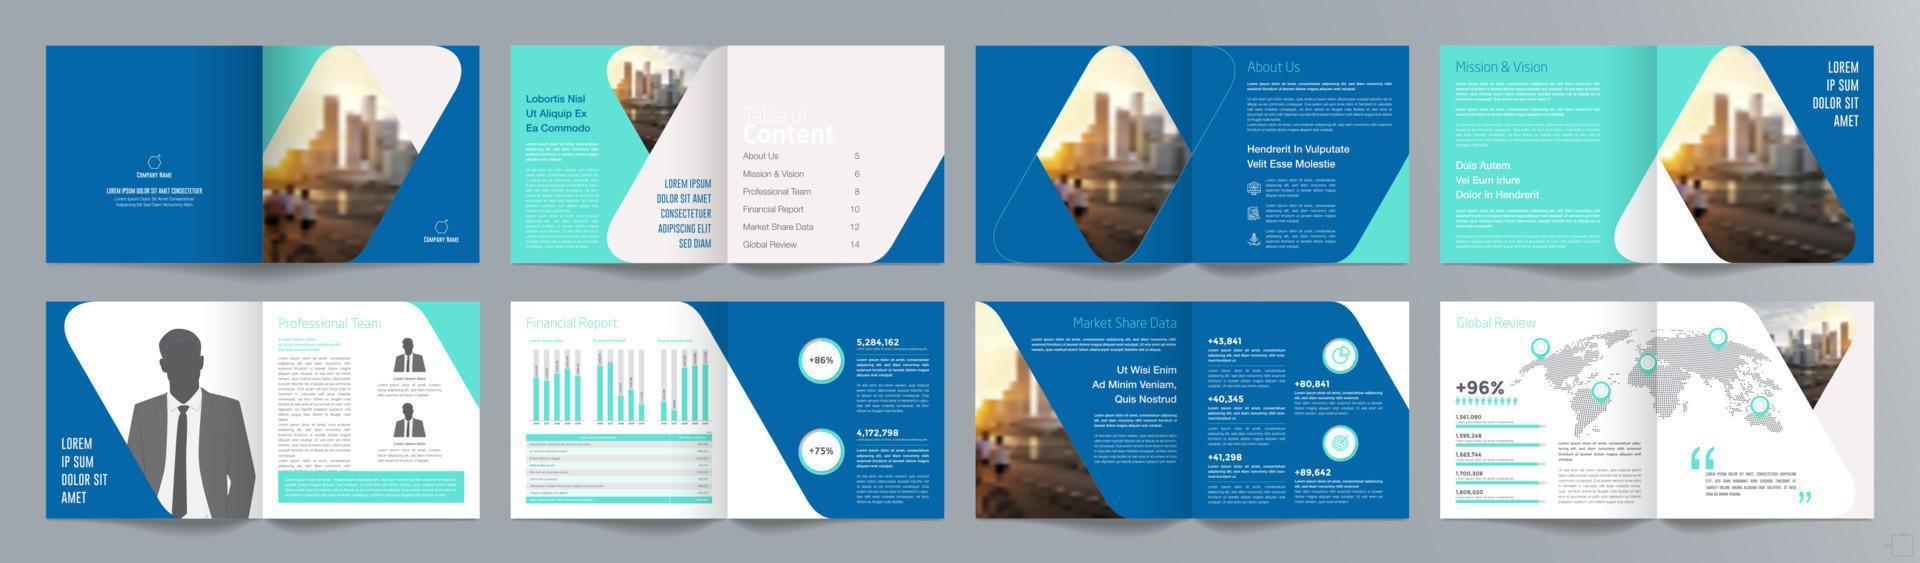 Broschürenvorlage für Unternehmenspräsentationen, Jahresbericht, 16-seitige, minimalistische, flache, geometrische Designvorlage für Geschäftsbroschüren, quadratische Größe. vektor